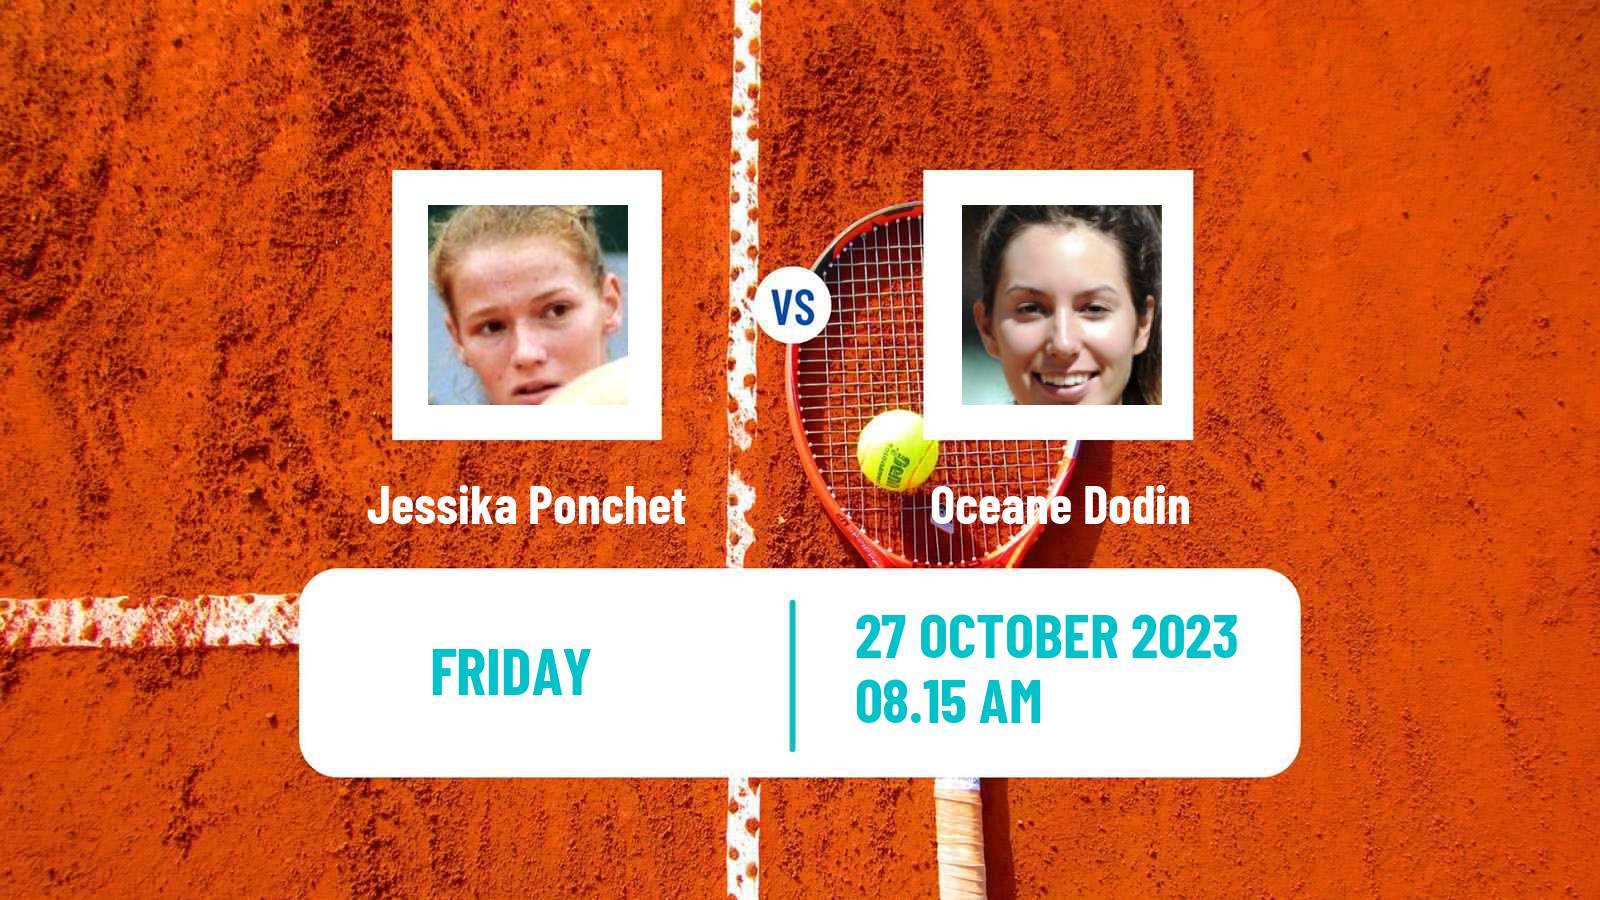 Tennis ITF W80 Poitiers Women Jessika Ponchet - Oceane Dodin